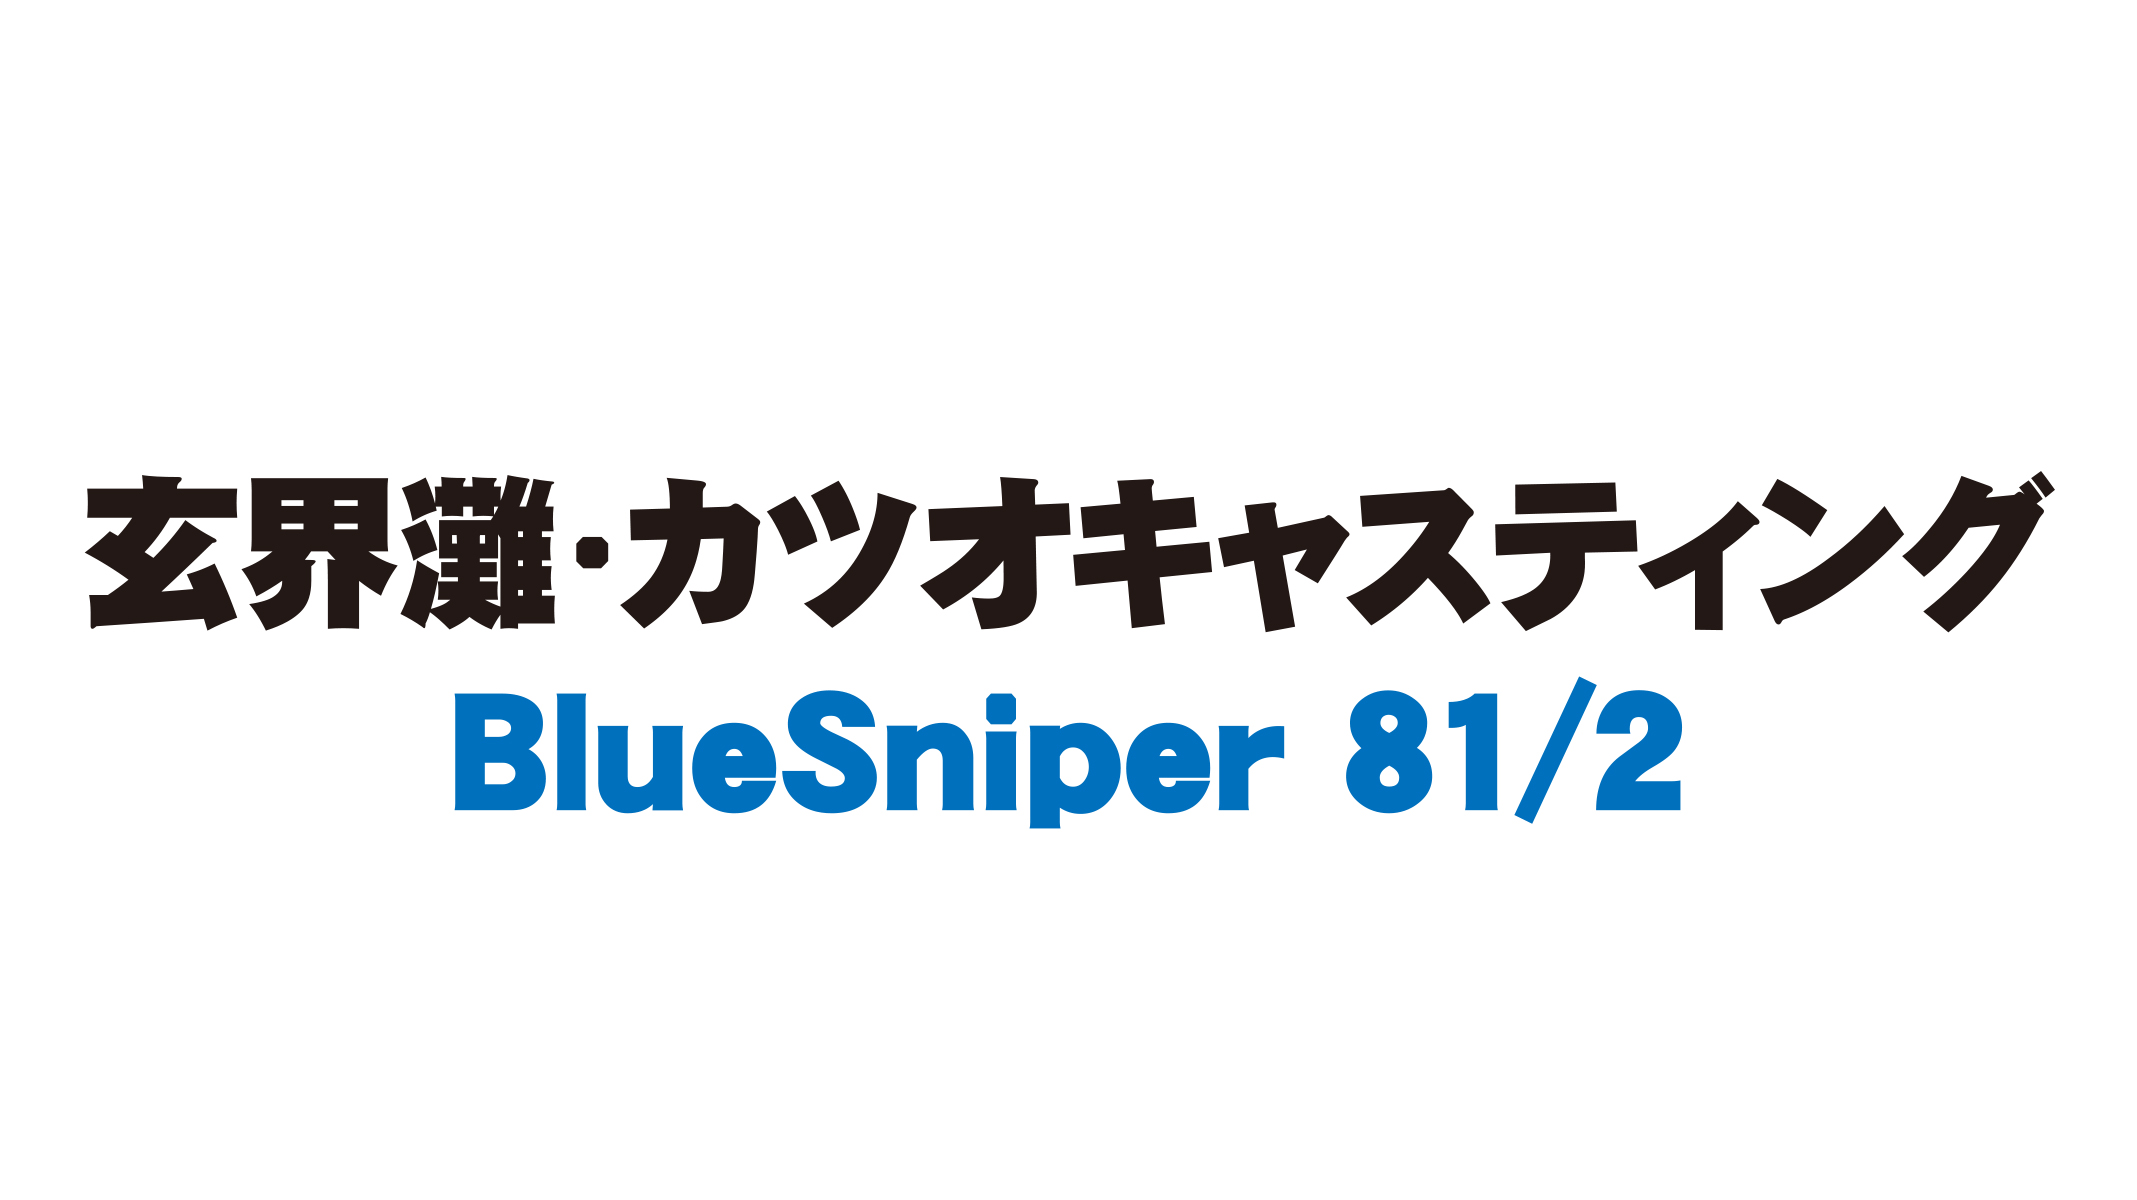 【フィールドスタッフレポート】『玄界灘・カツオキャスティング』BlueSniper 81/2